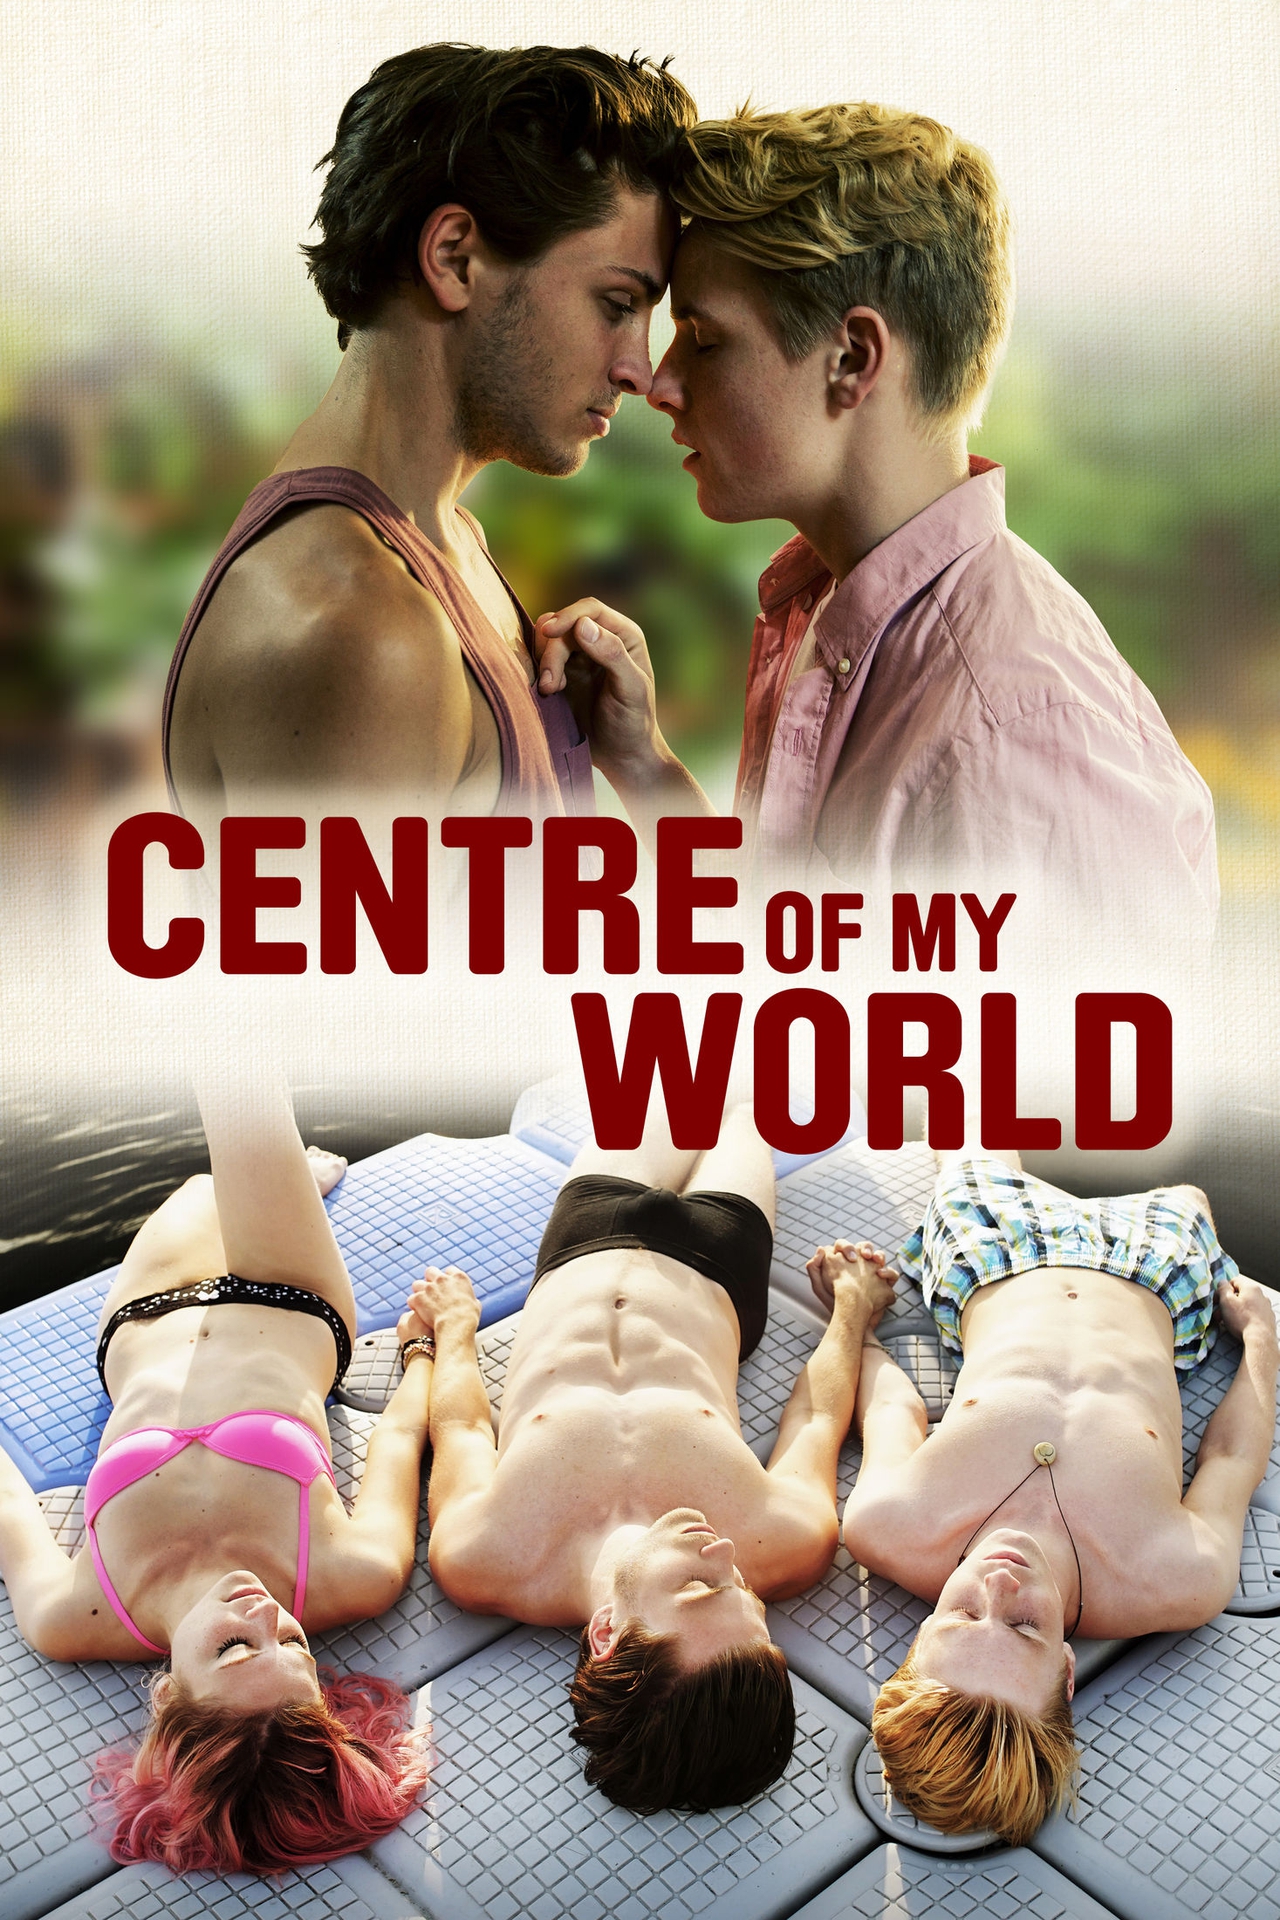  فیلم سینمایی Center of My World به کارگردانی Jakob M. Erwa